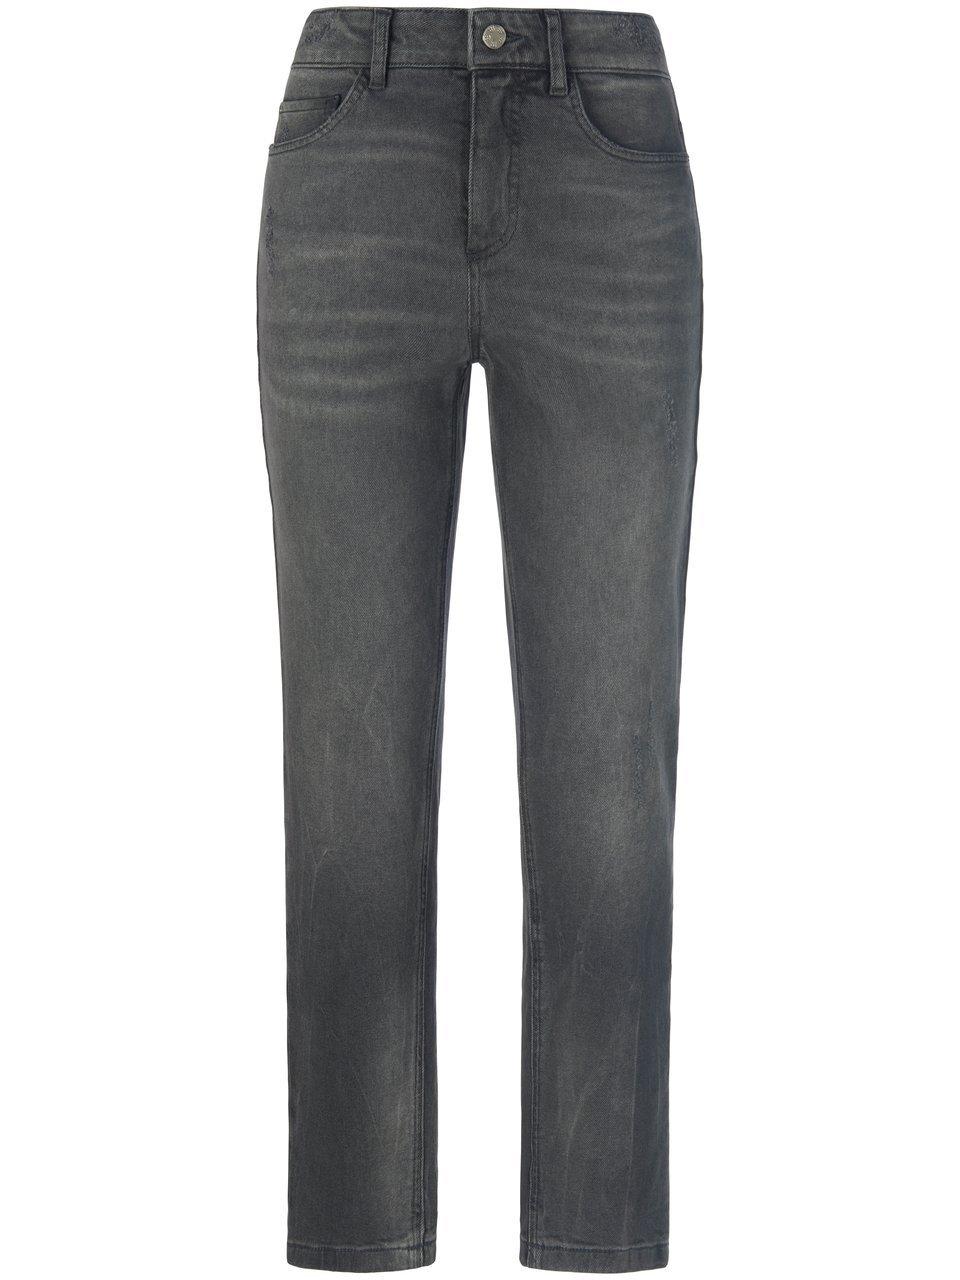 Enkellange jeans in smal model Van BASLER denim